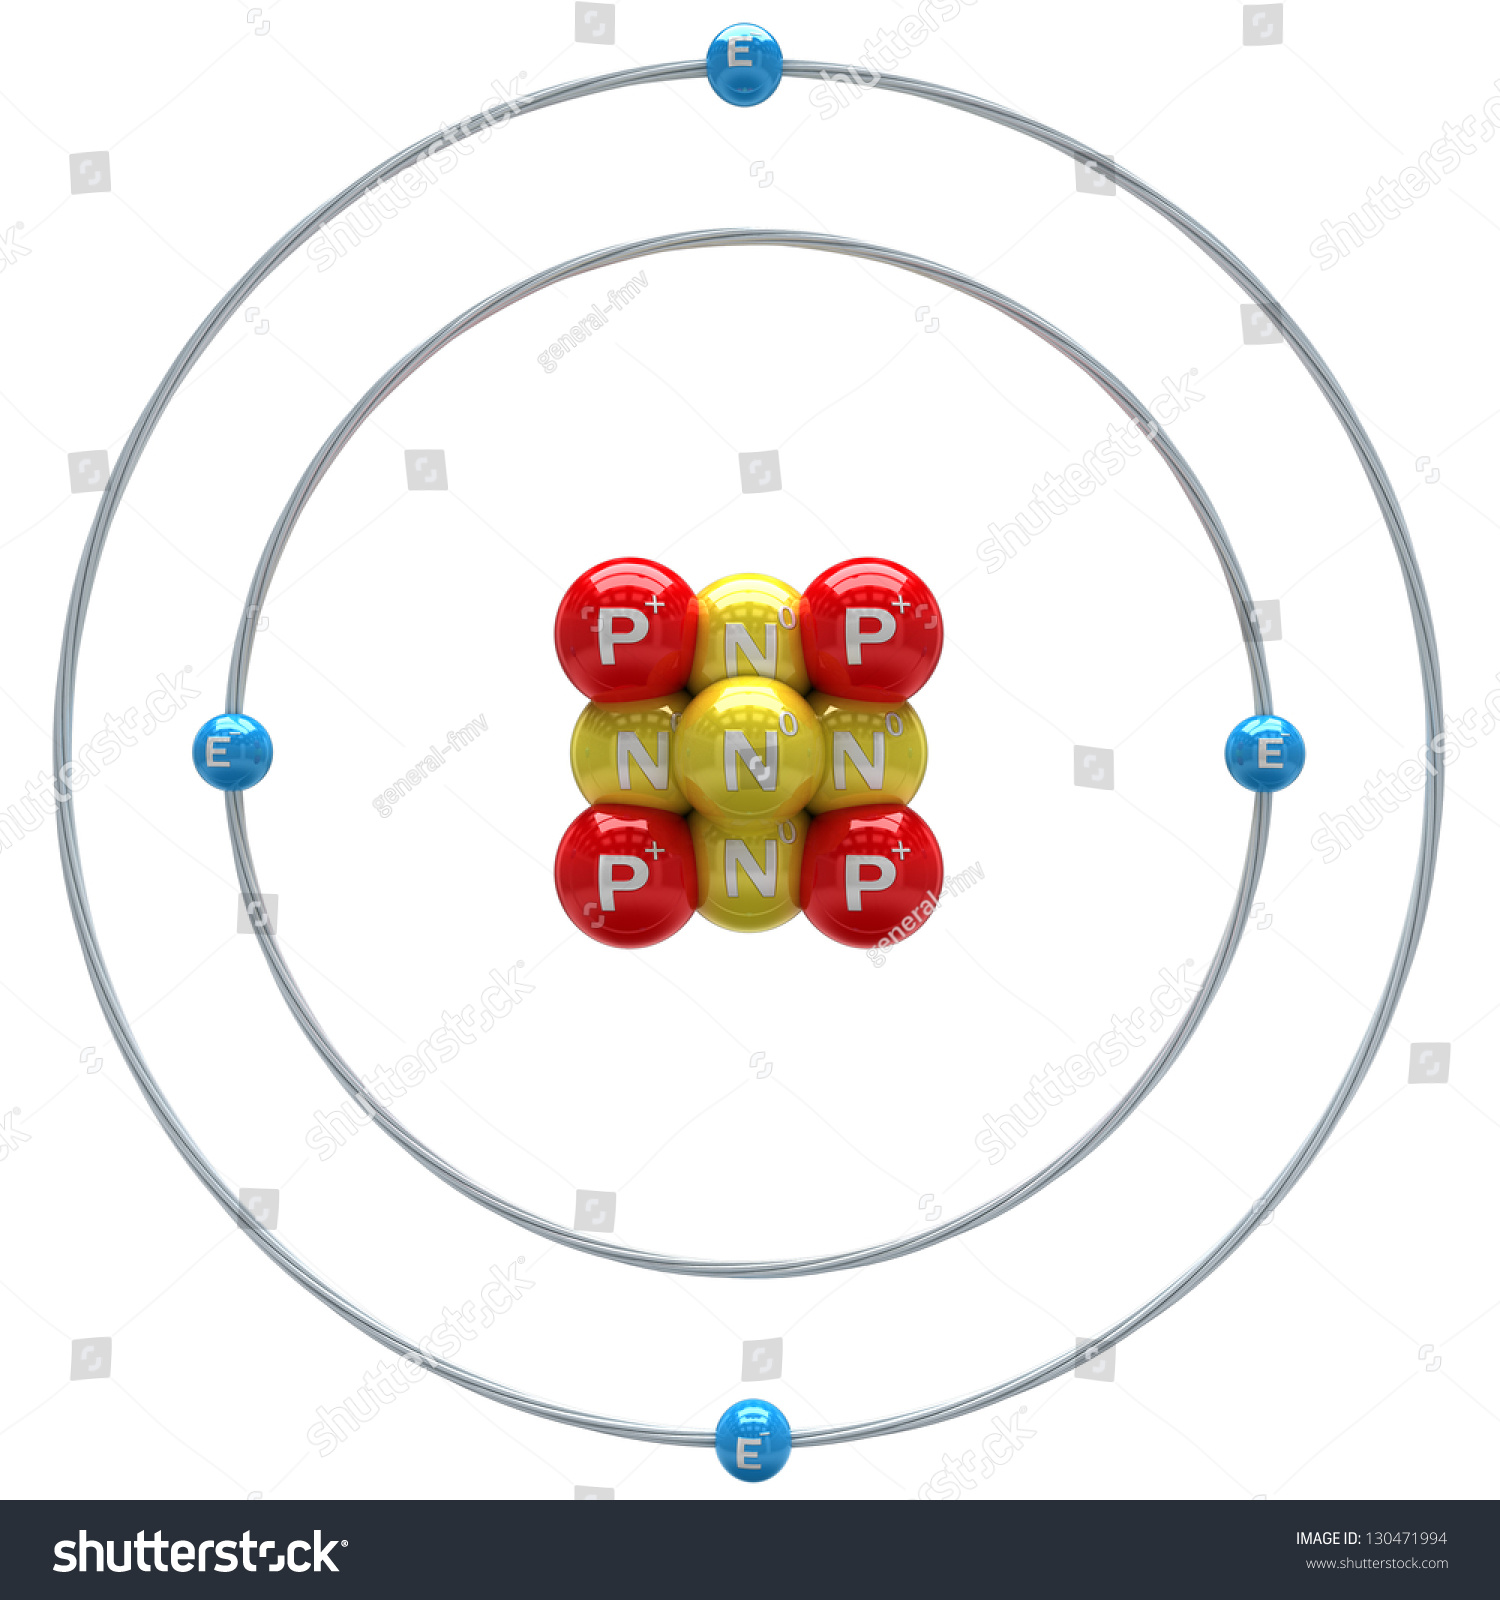 Beryllium Atom On White Background Stock Photo 130471994 : Shutterstock